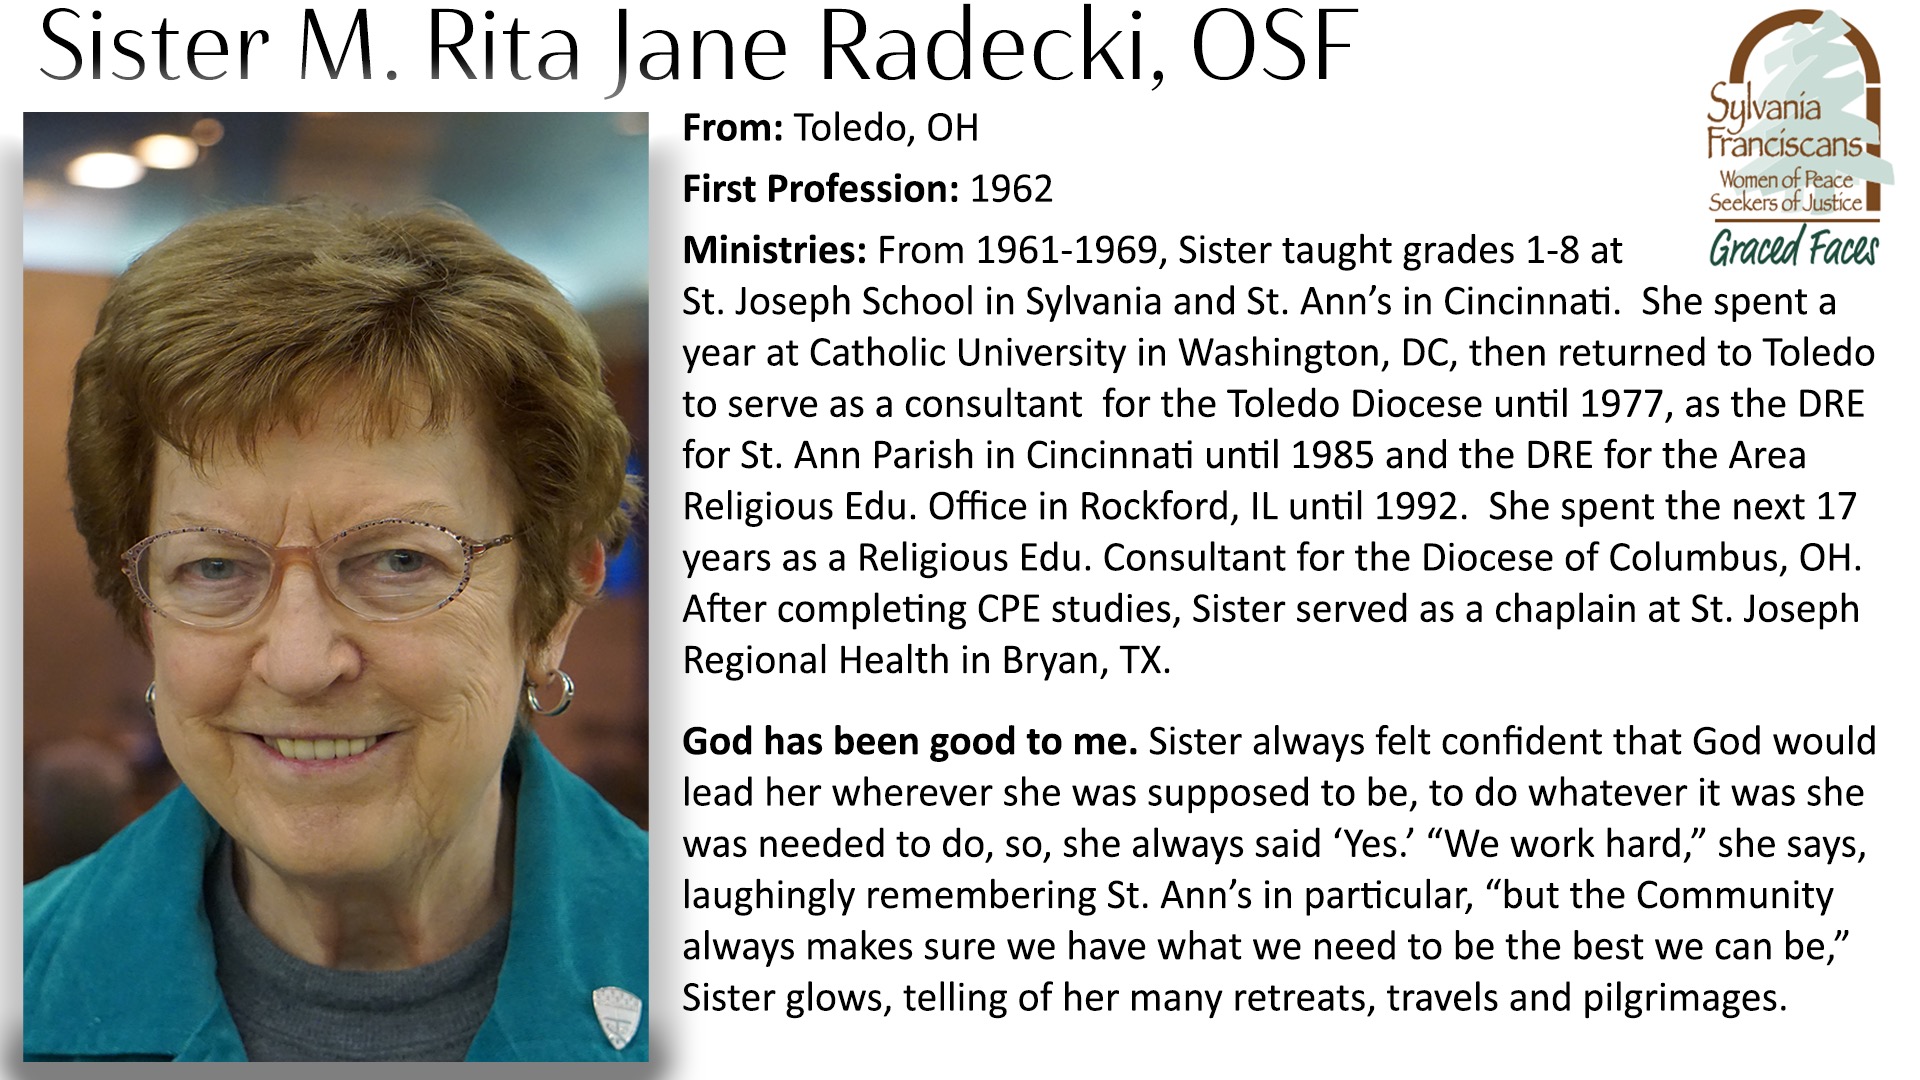 Sister M. Rita Jane Radecki, OSf